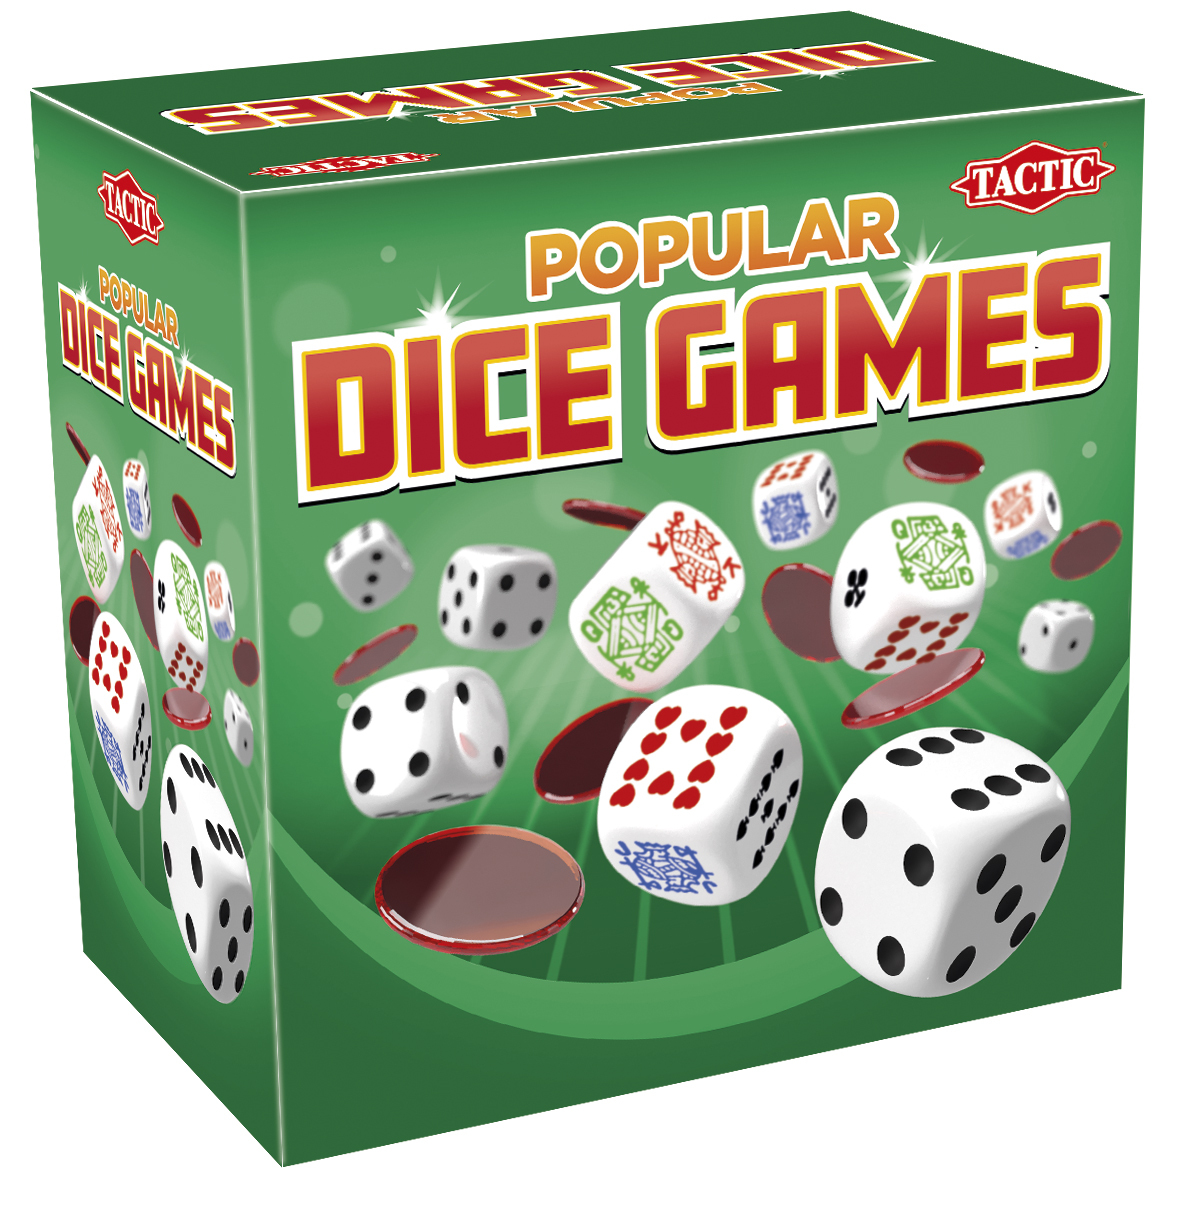 Tactic Popular Dice Games